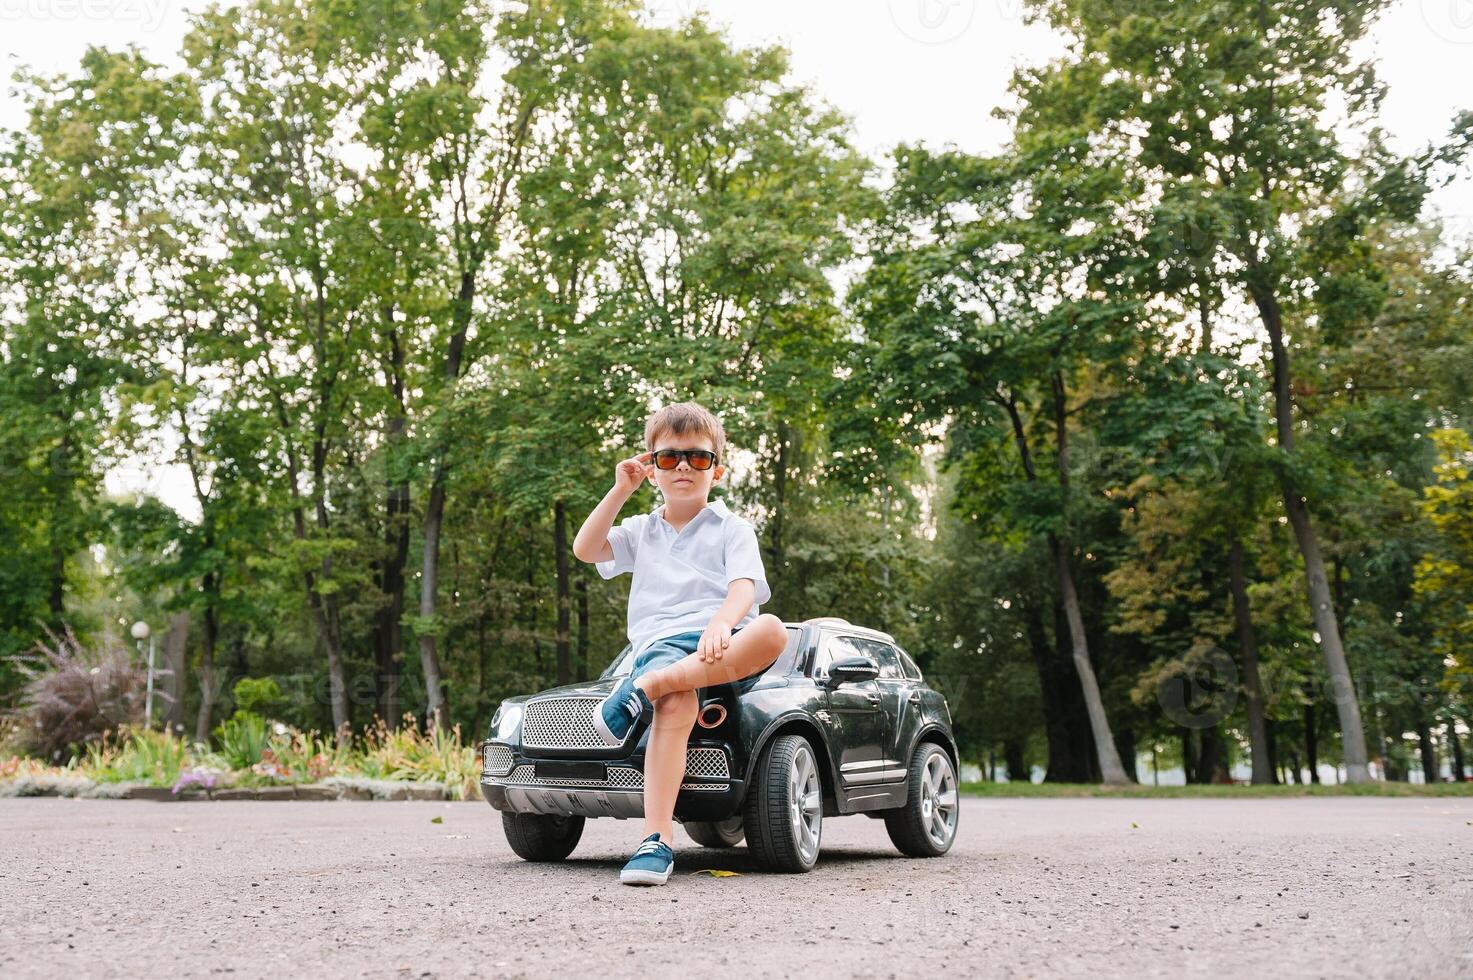 söt pojke i ridning en svart elektrisk bil i de parkera. rolig pojke rider på en leksak elektrisk bil. kopia Plats. foto